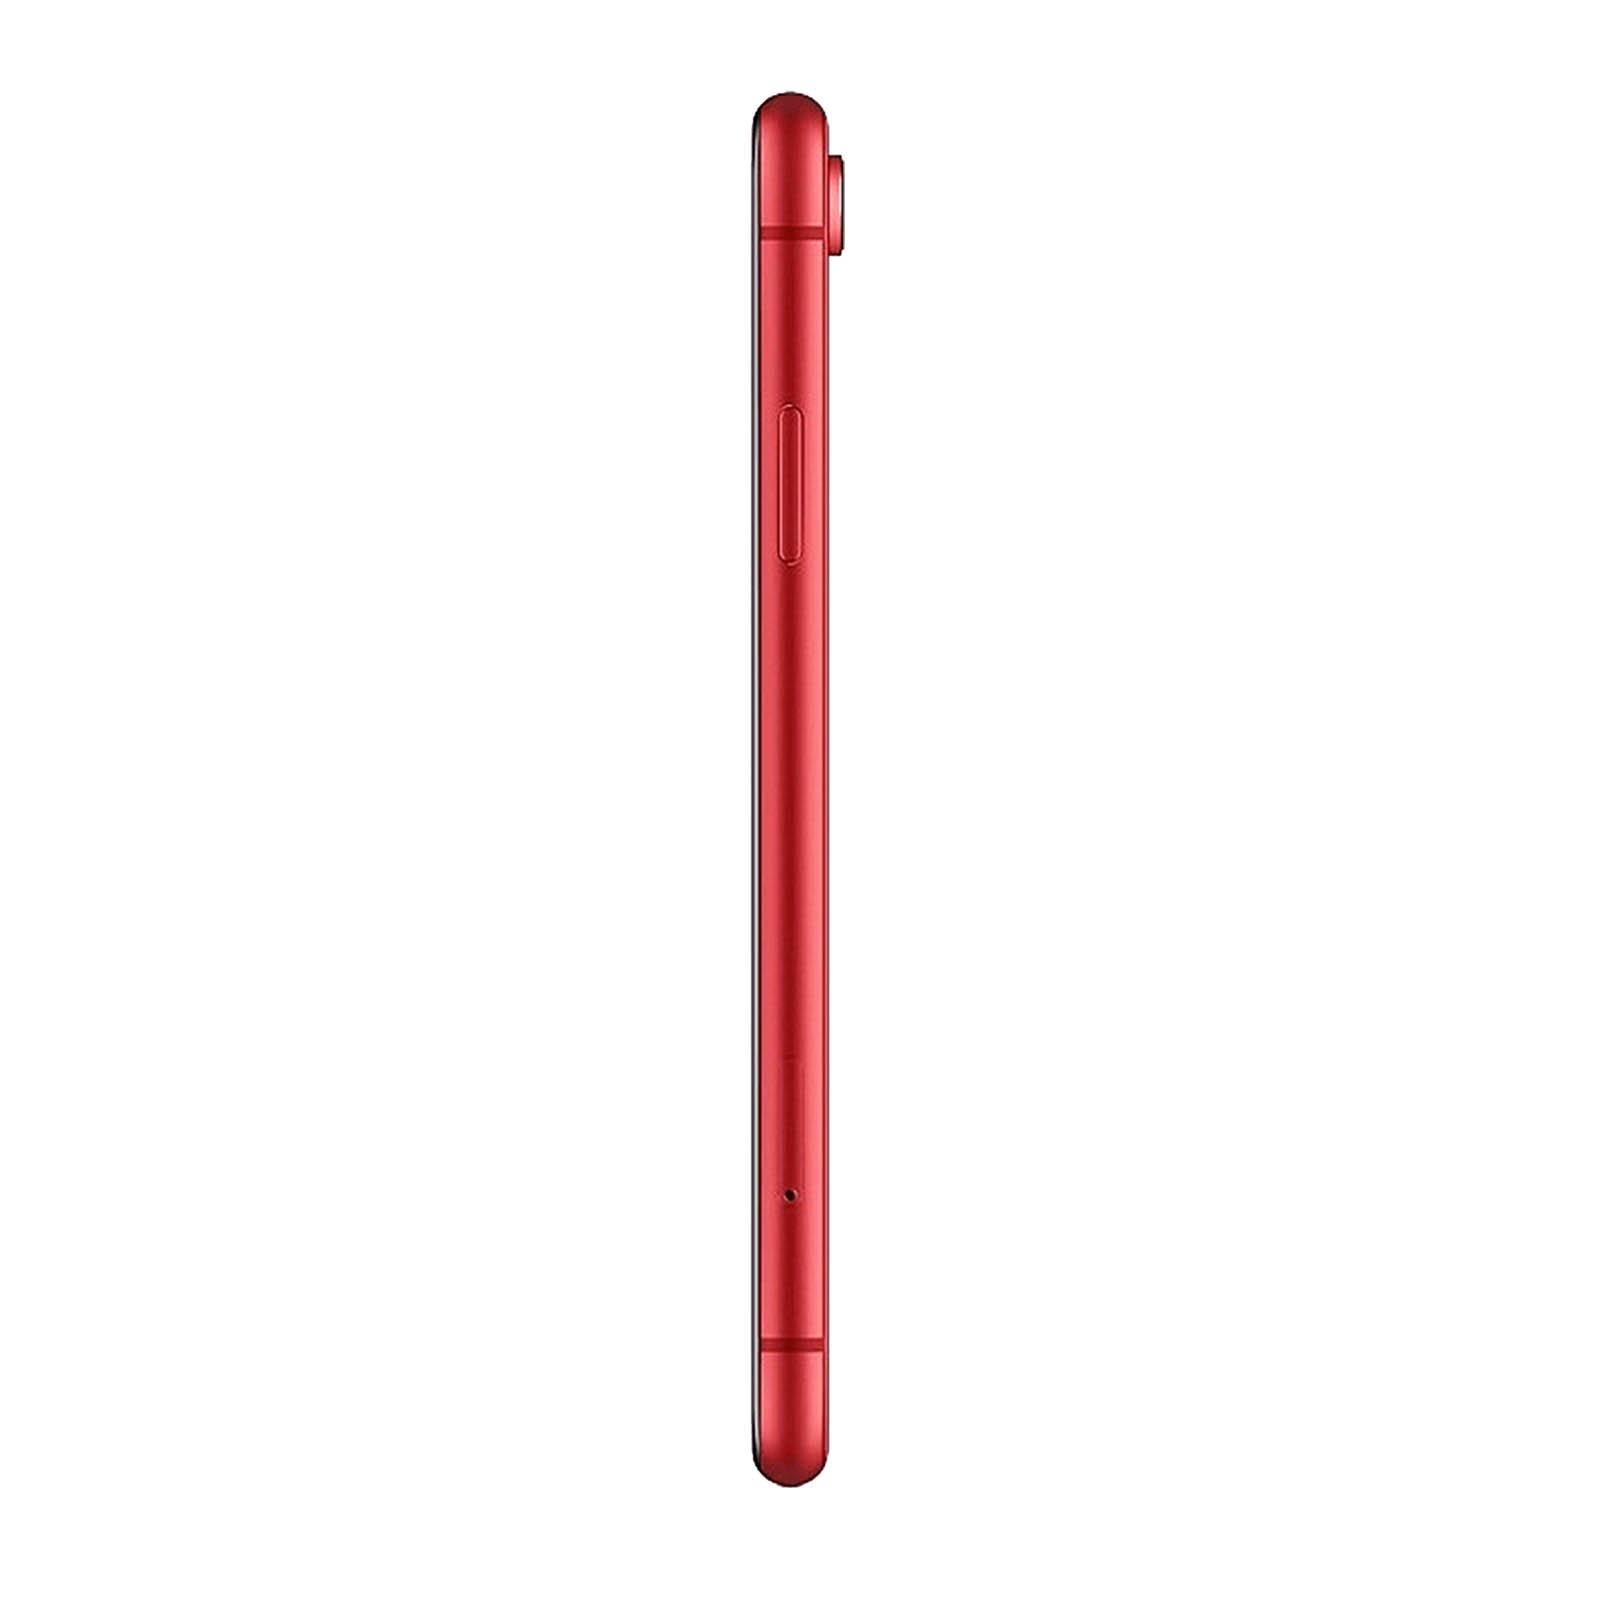 iPhone XR 64GB Red Unlocked – Loop Mobile